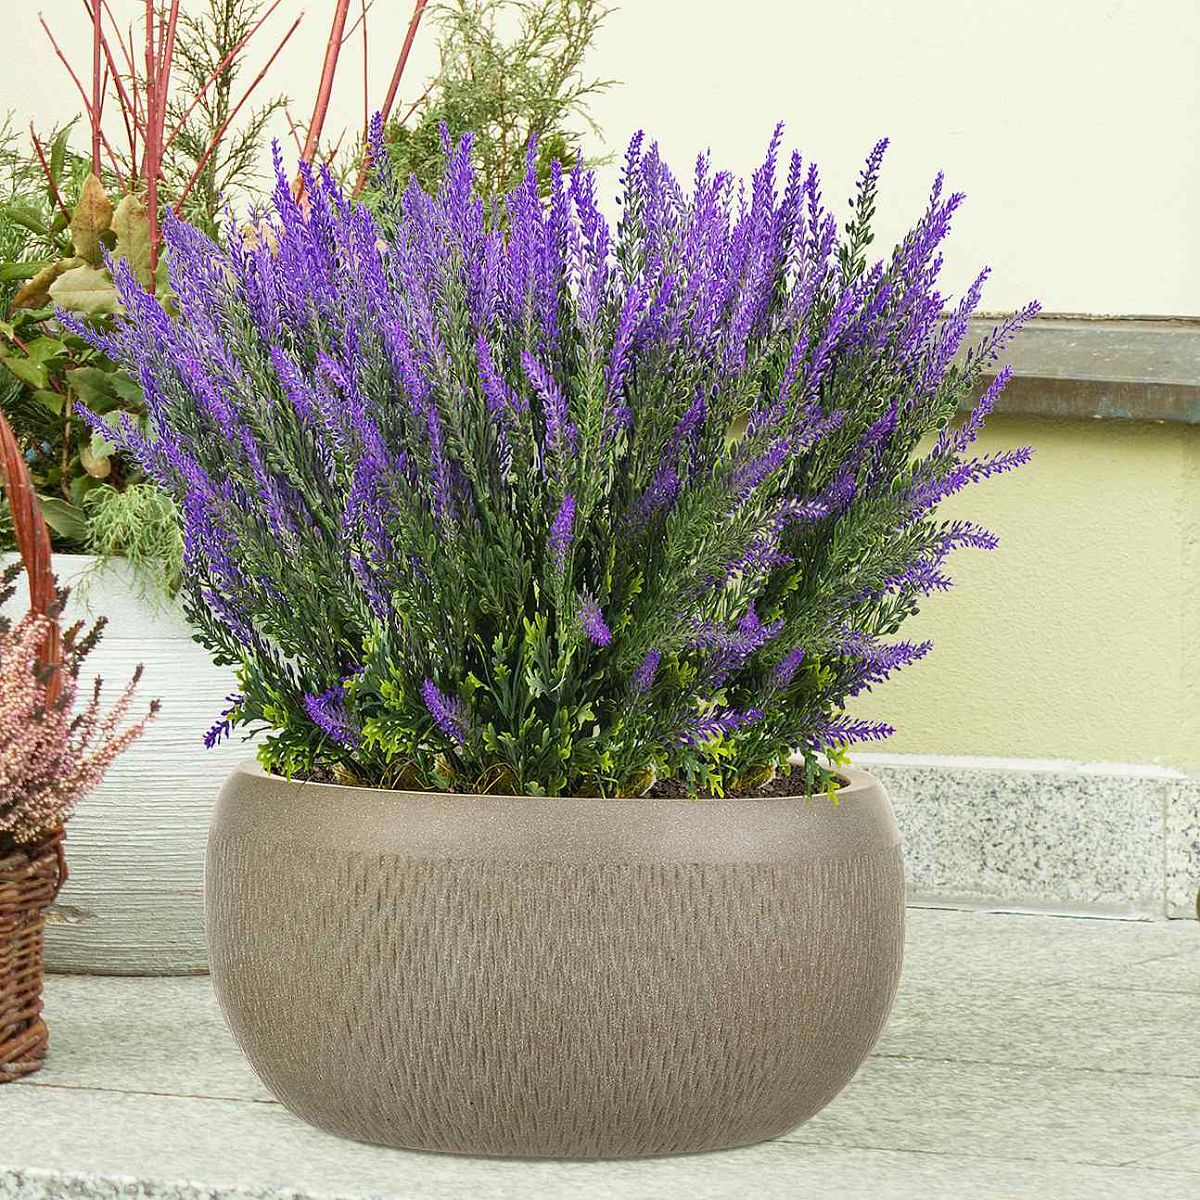 IDEALIST Lite Mesh Style Bowl Planter Outdoor Plant Pot